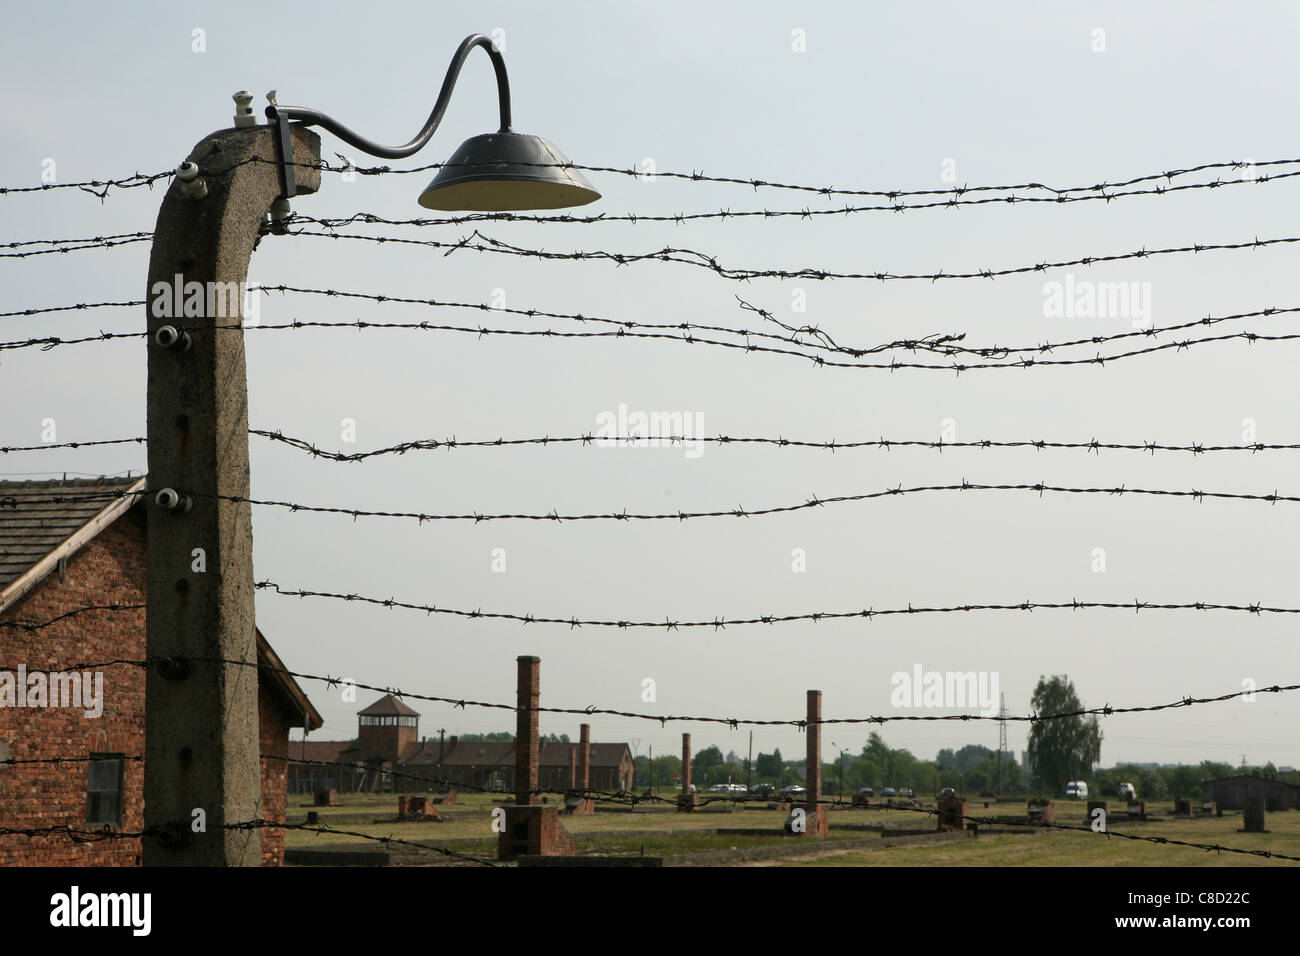 Auschwitz II Birkenau German Nazi concentration and extermination camp in Oswiecim, Poland. Stock Photo